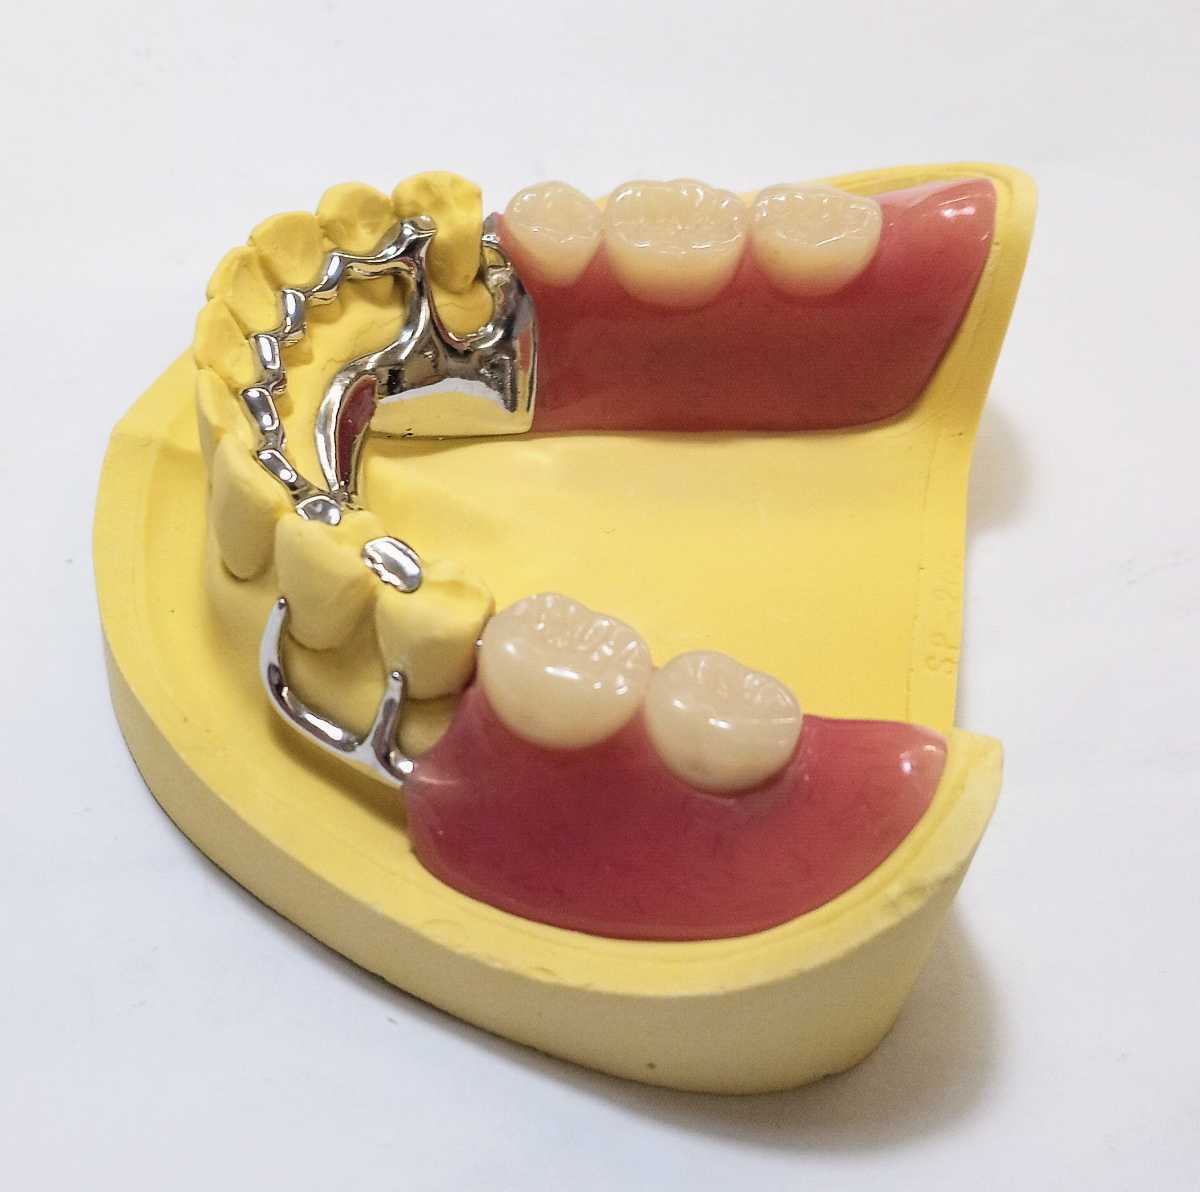 送料込み 下顎金属床 歯科 サンプル 見本 入れ歯 パーシャル 部分床 歯科技工 自費 資料